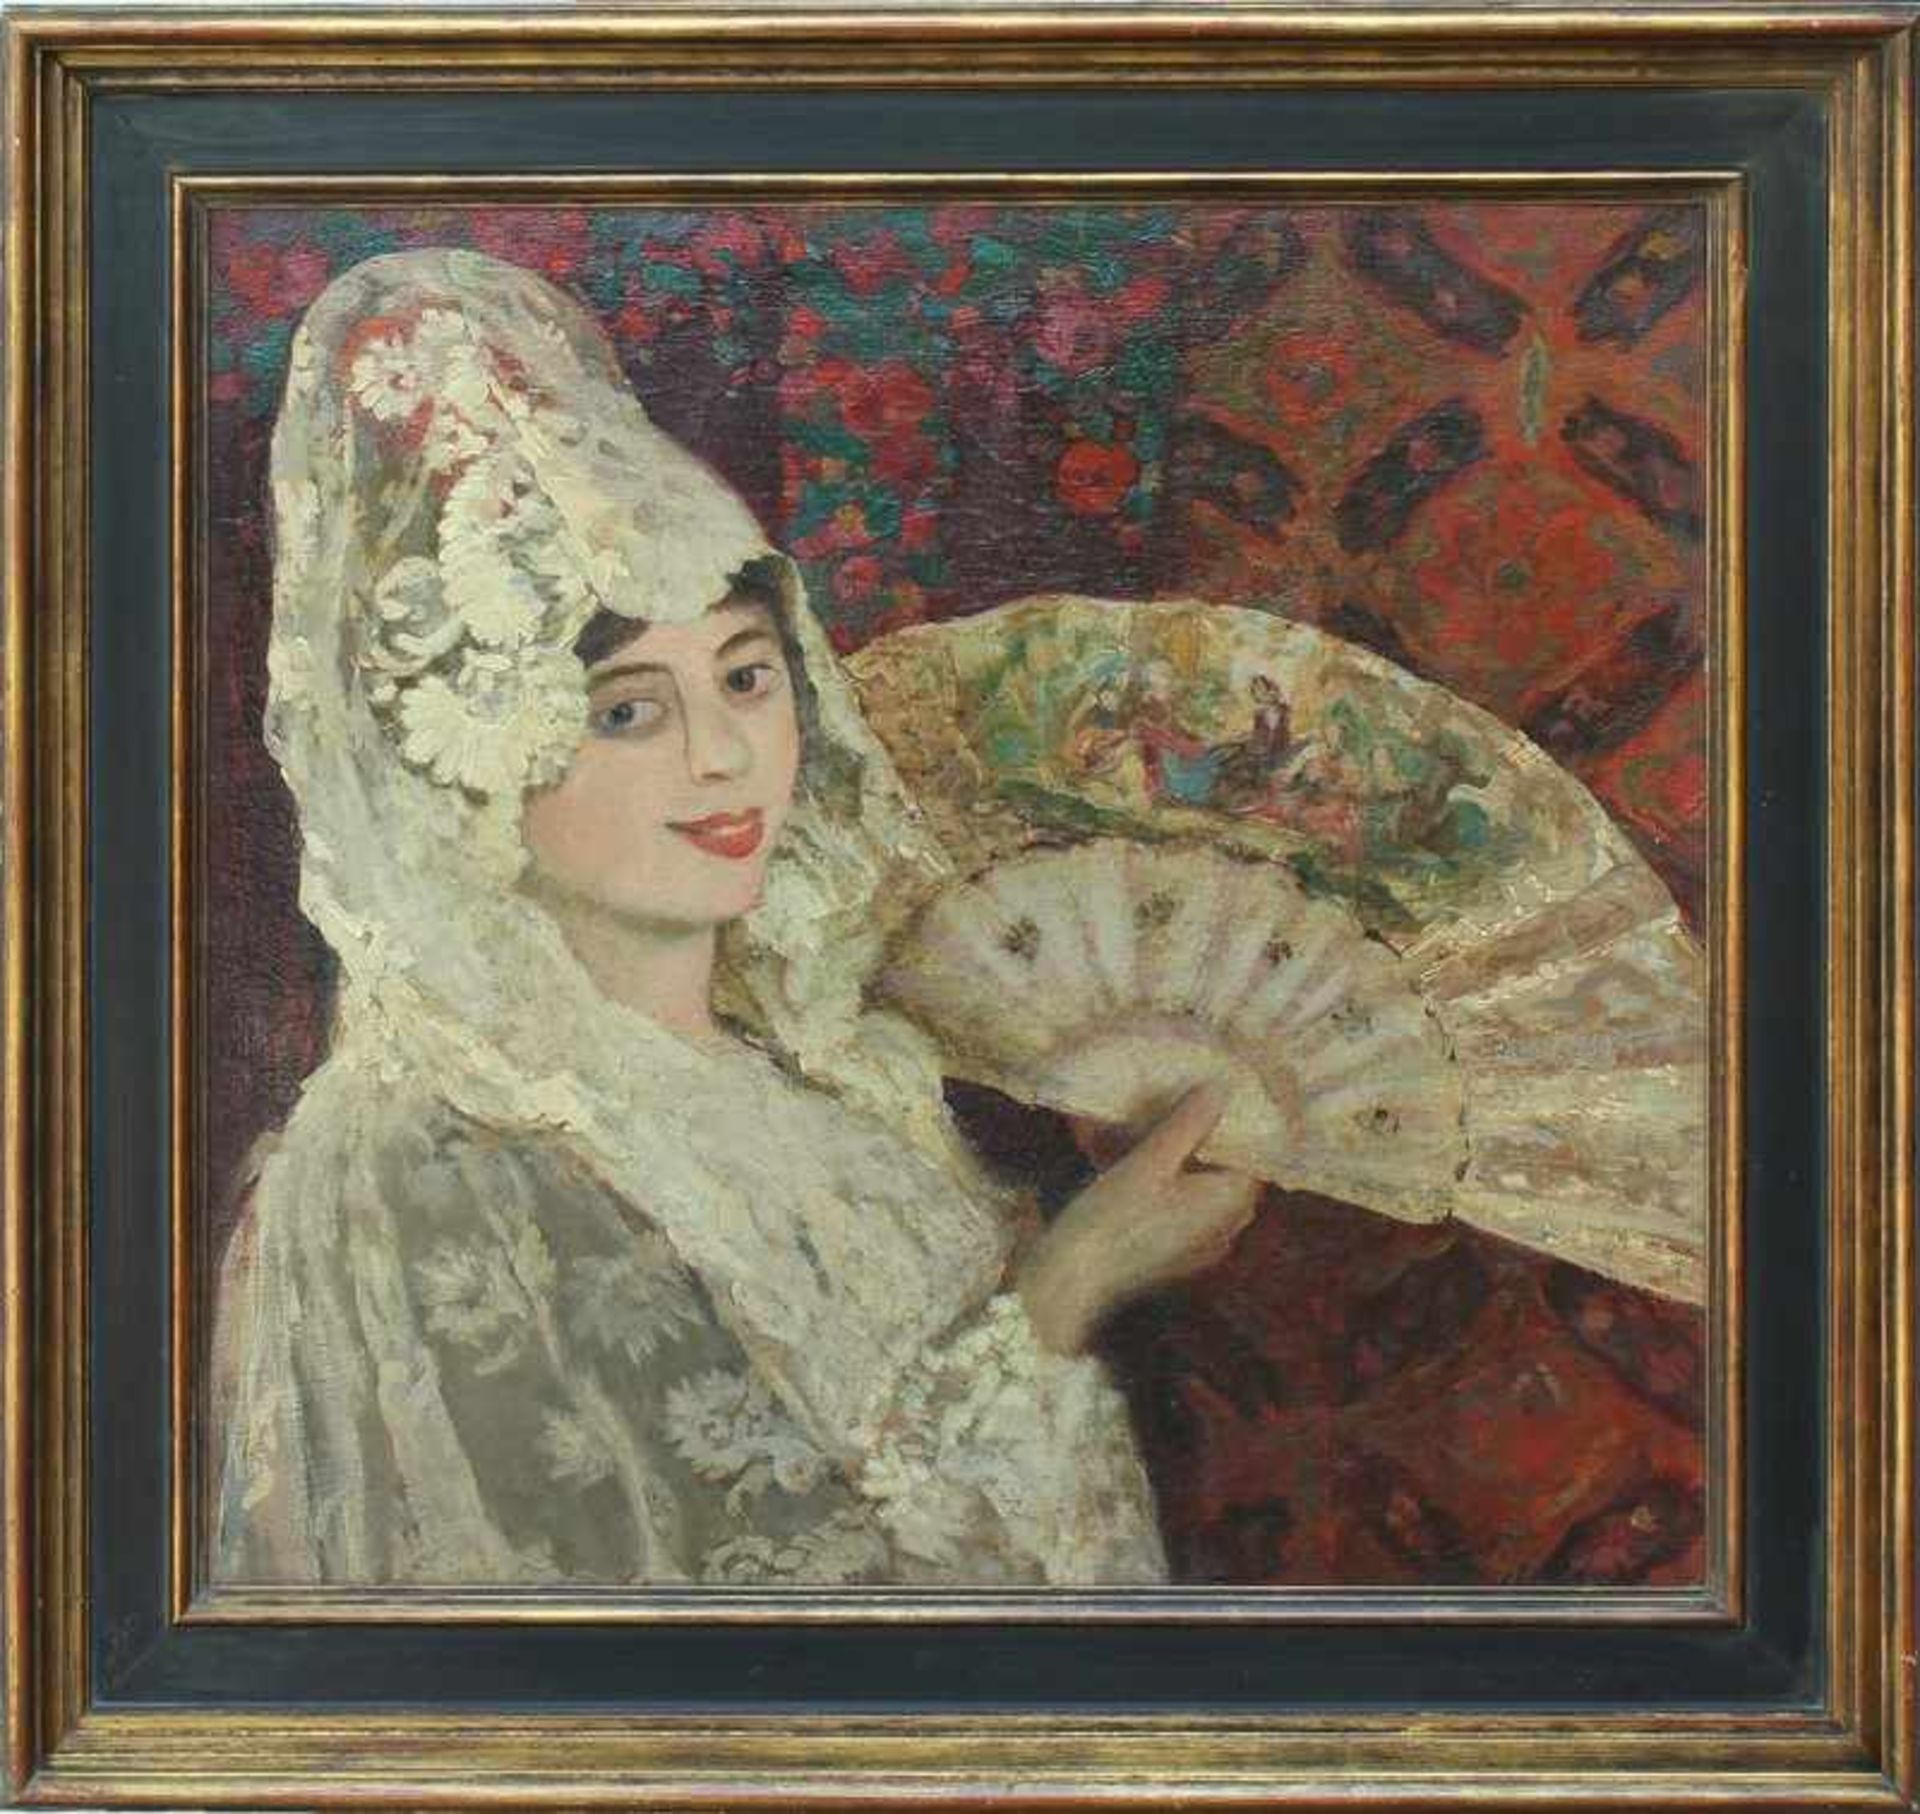 Unleserlich signiert um 1900, "Junge Dame mit Fächer", Öl/Lwd., kontrastreiche Farbpalette in Rot,